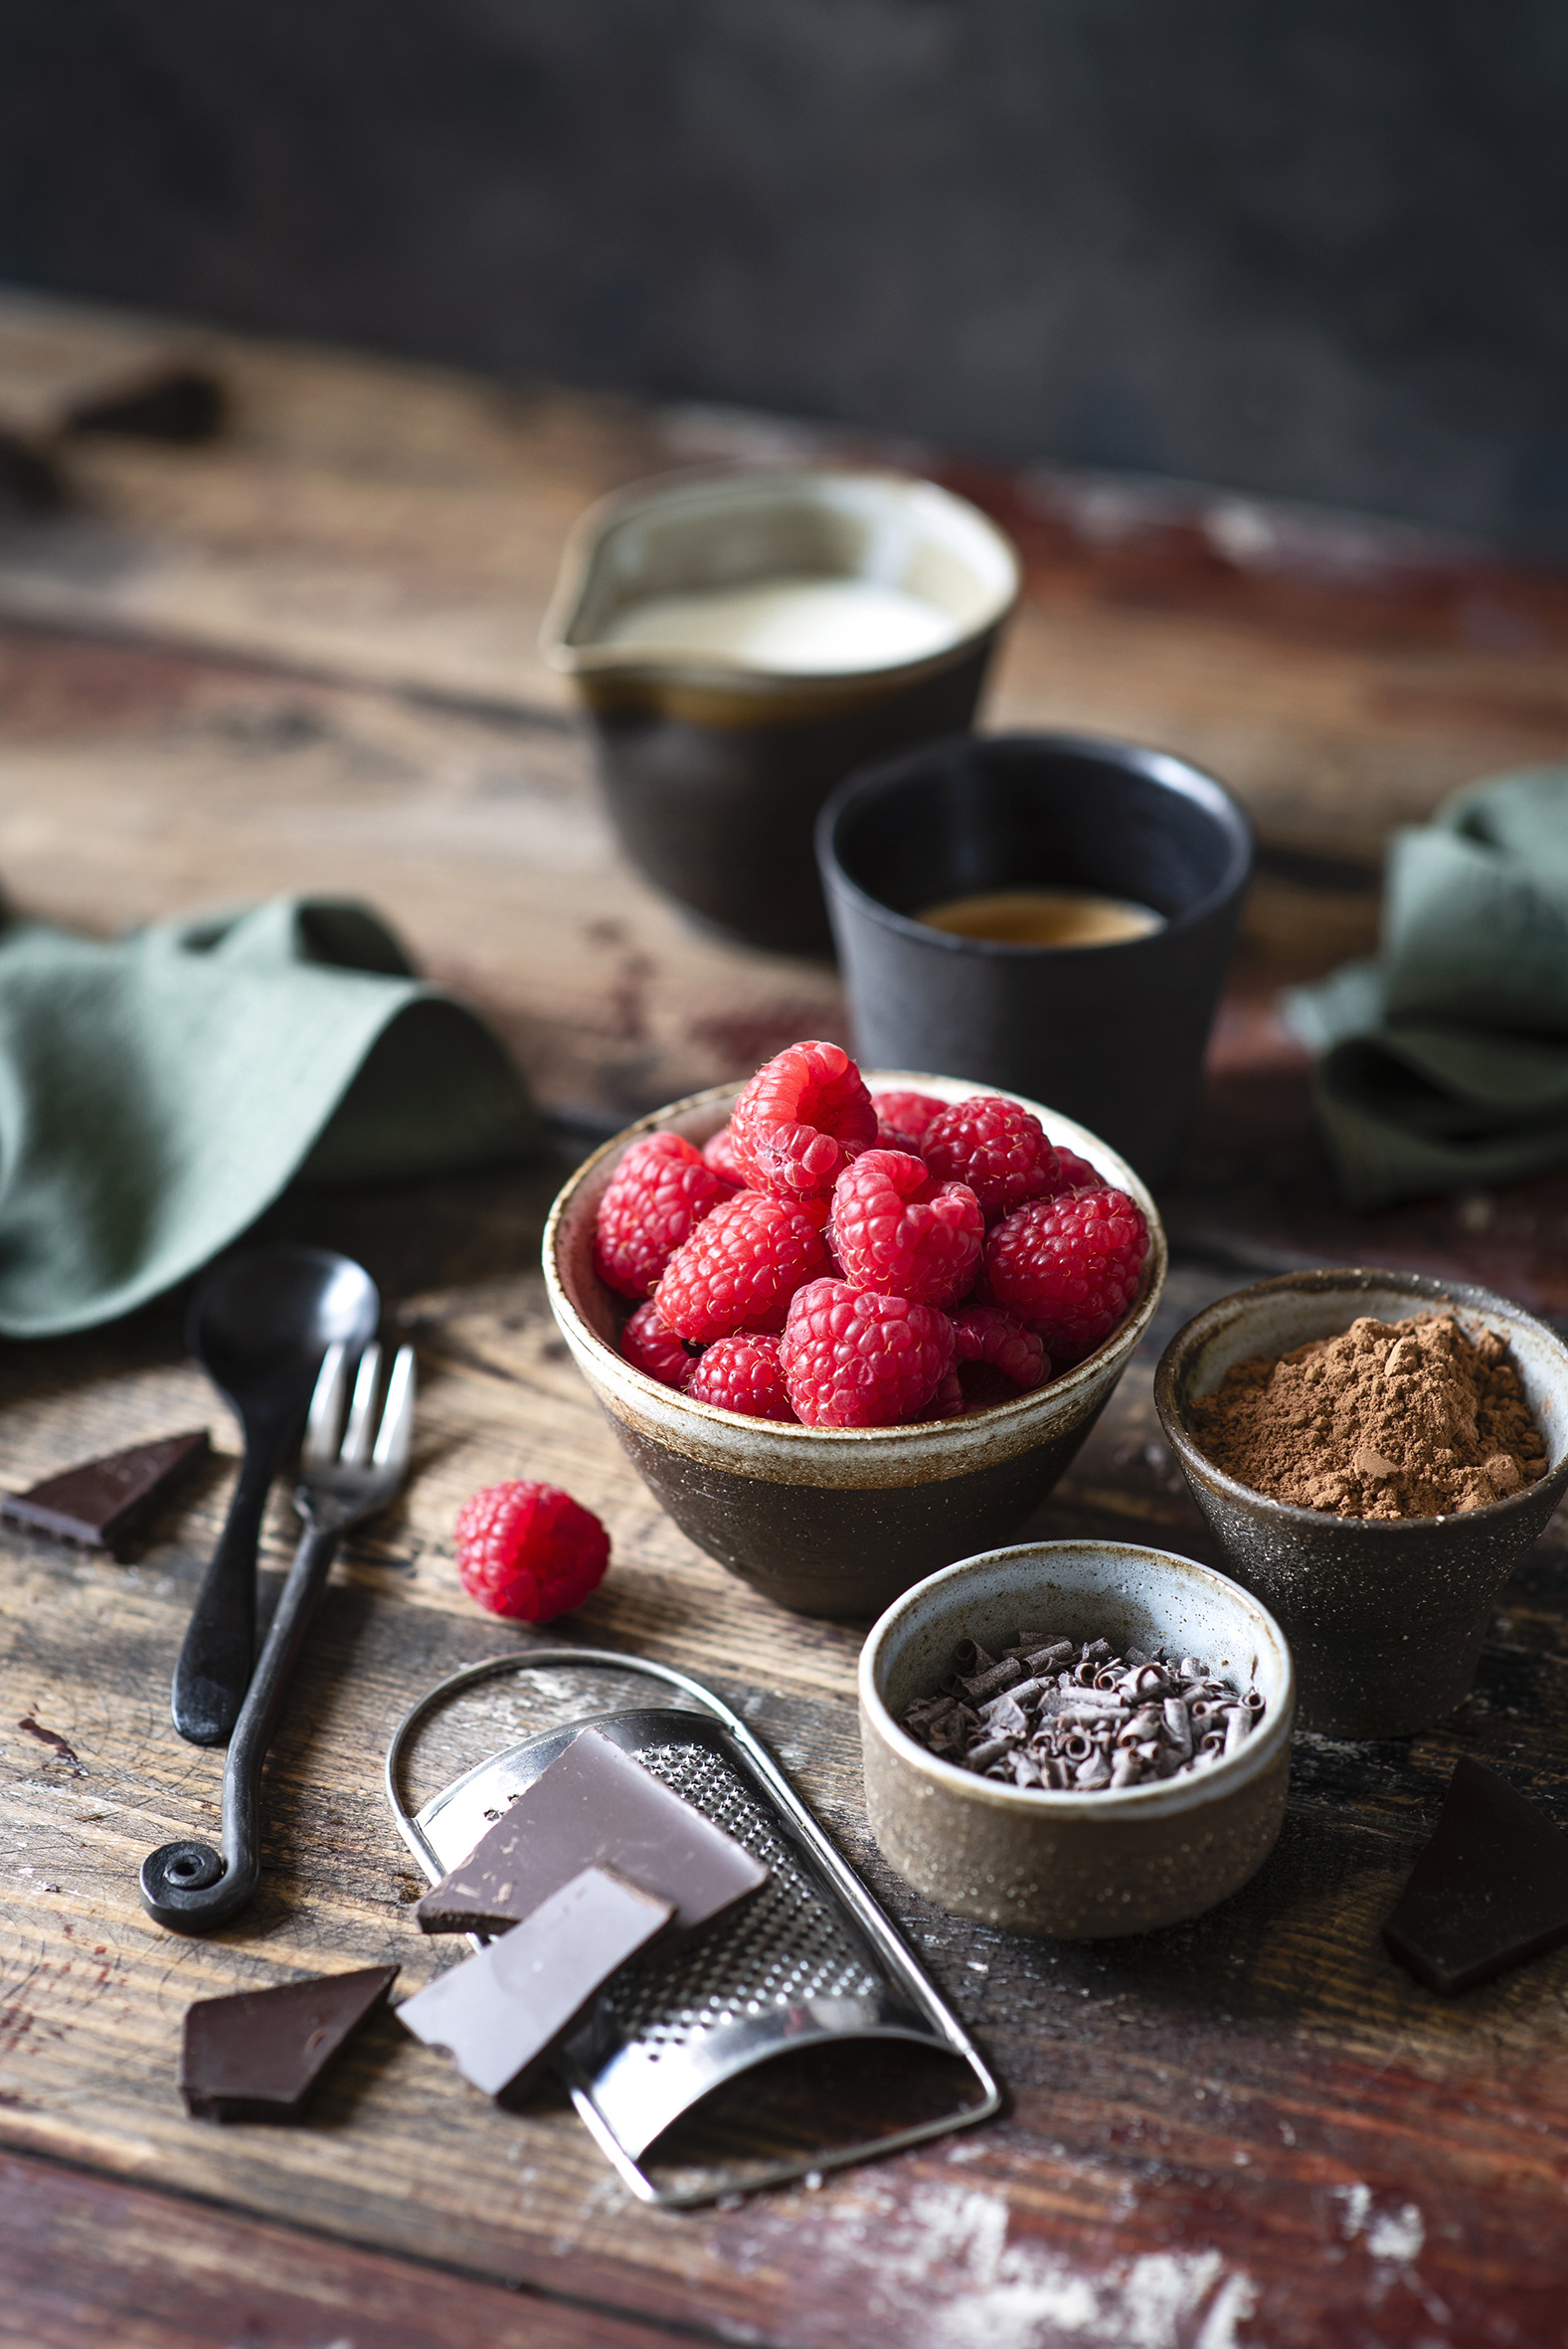 Картинка Шоколад Какао порошок Малина Еда Доски  для мобильного телефона Пища Продукты питания